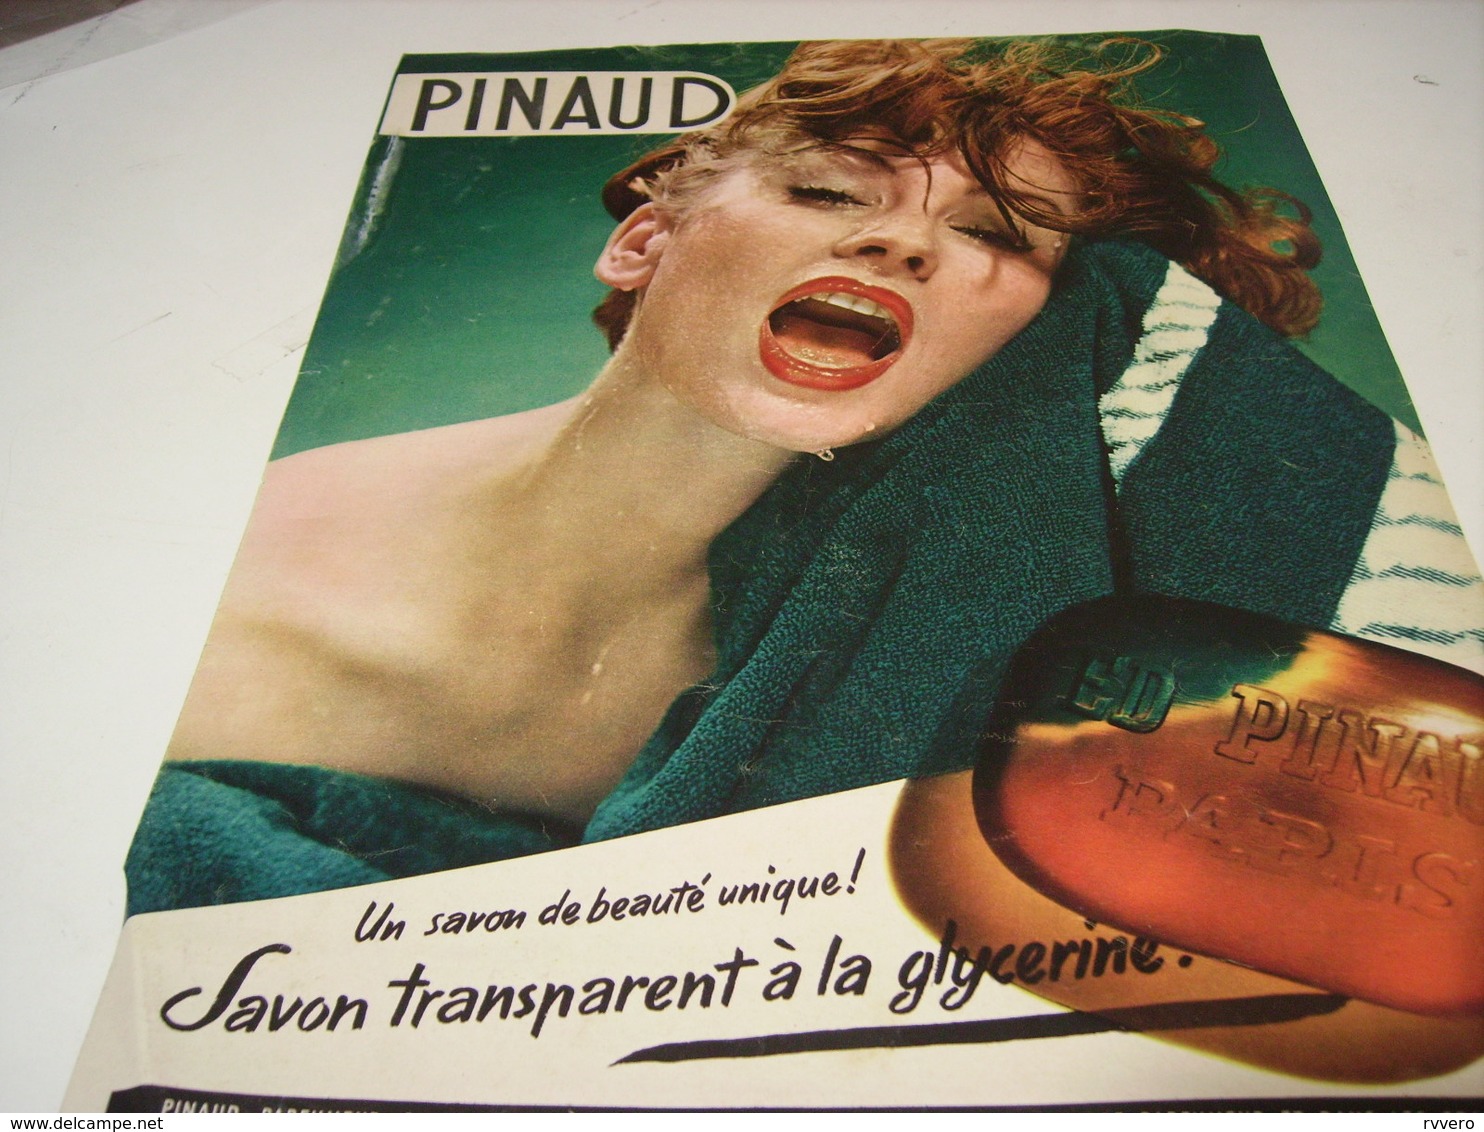 ANCIENNE PUBLICITE SAVON TRANSPARENT DE PINAUD 1953 - Publicités